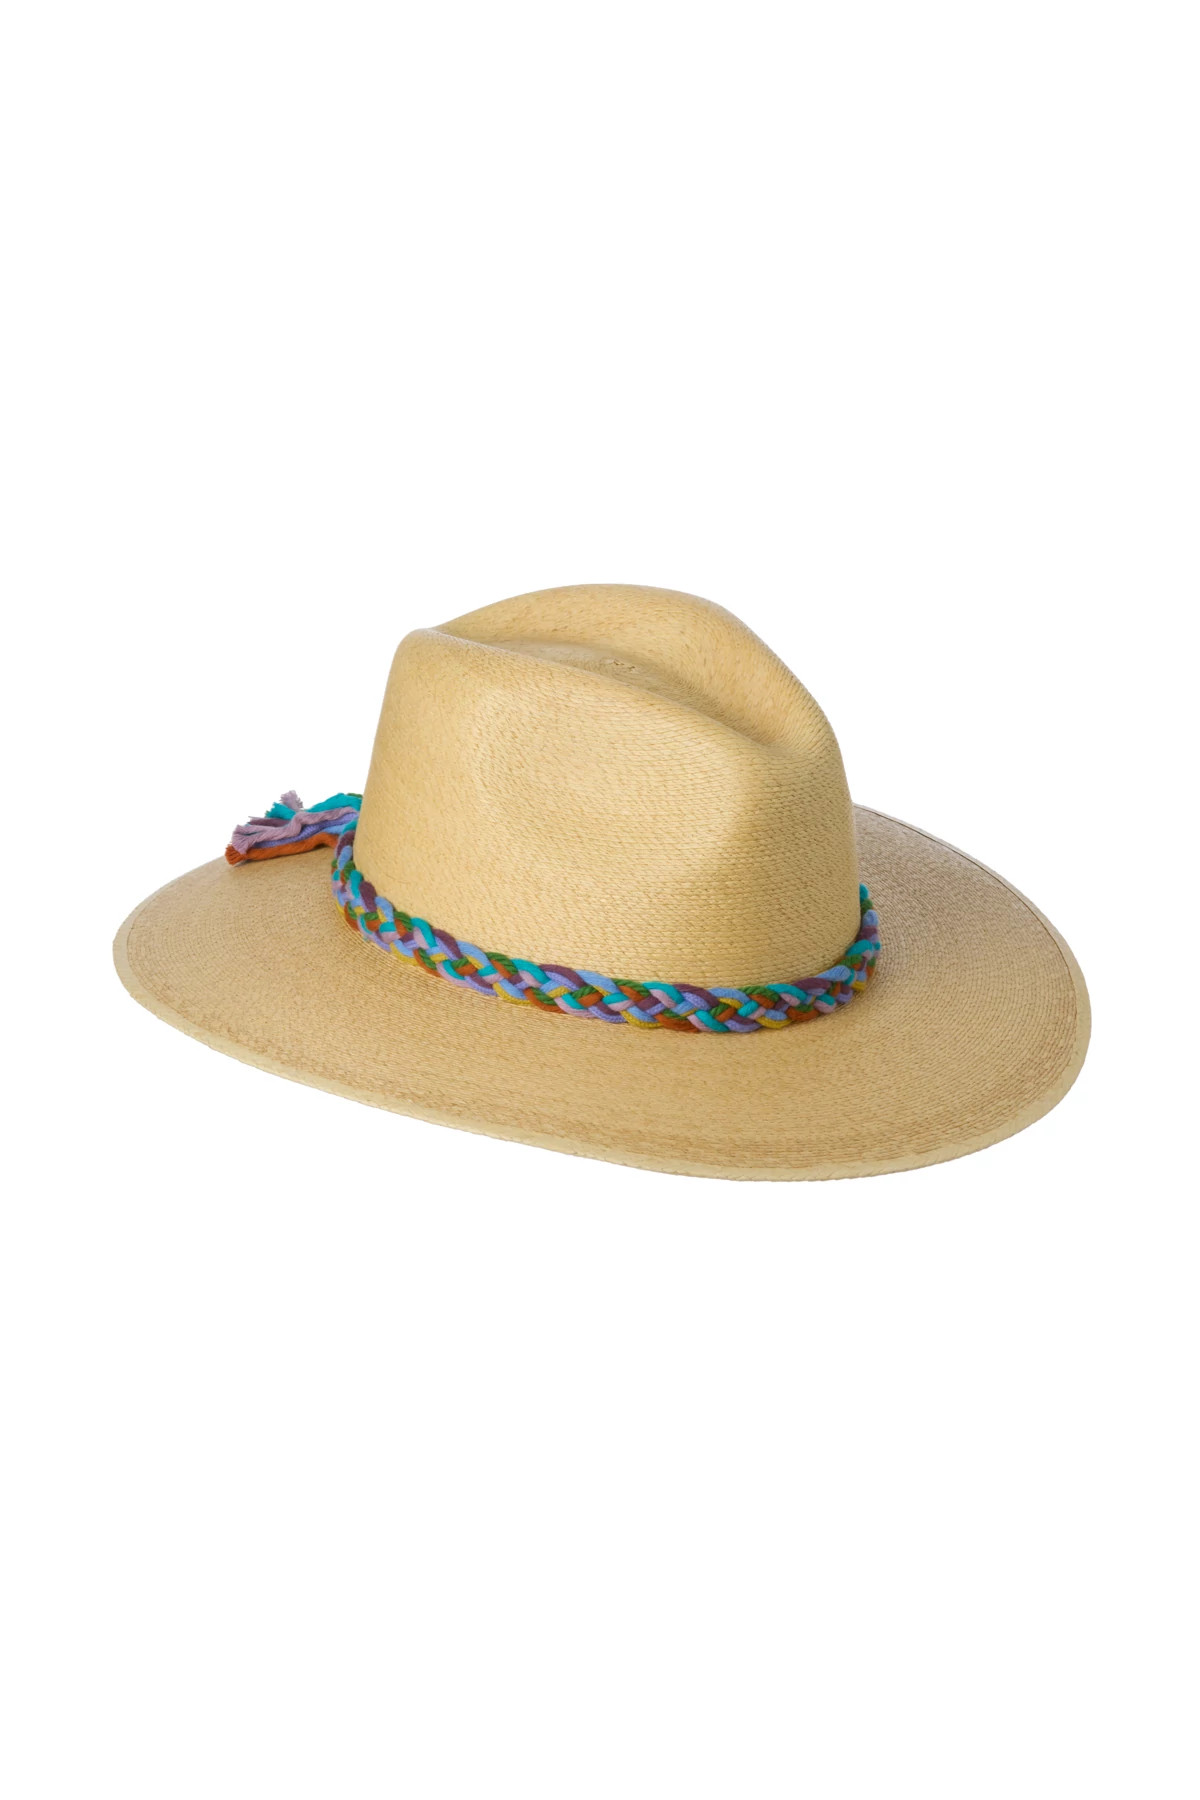 NATURAL Starburst Panama Hat image number 1